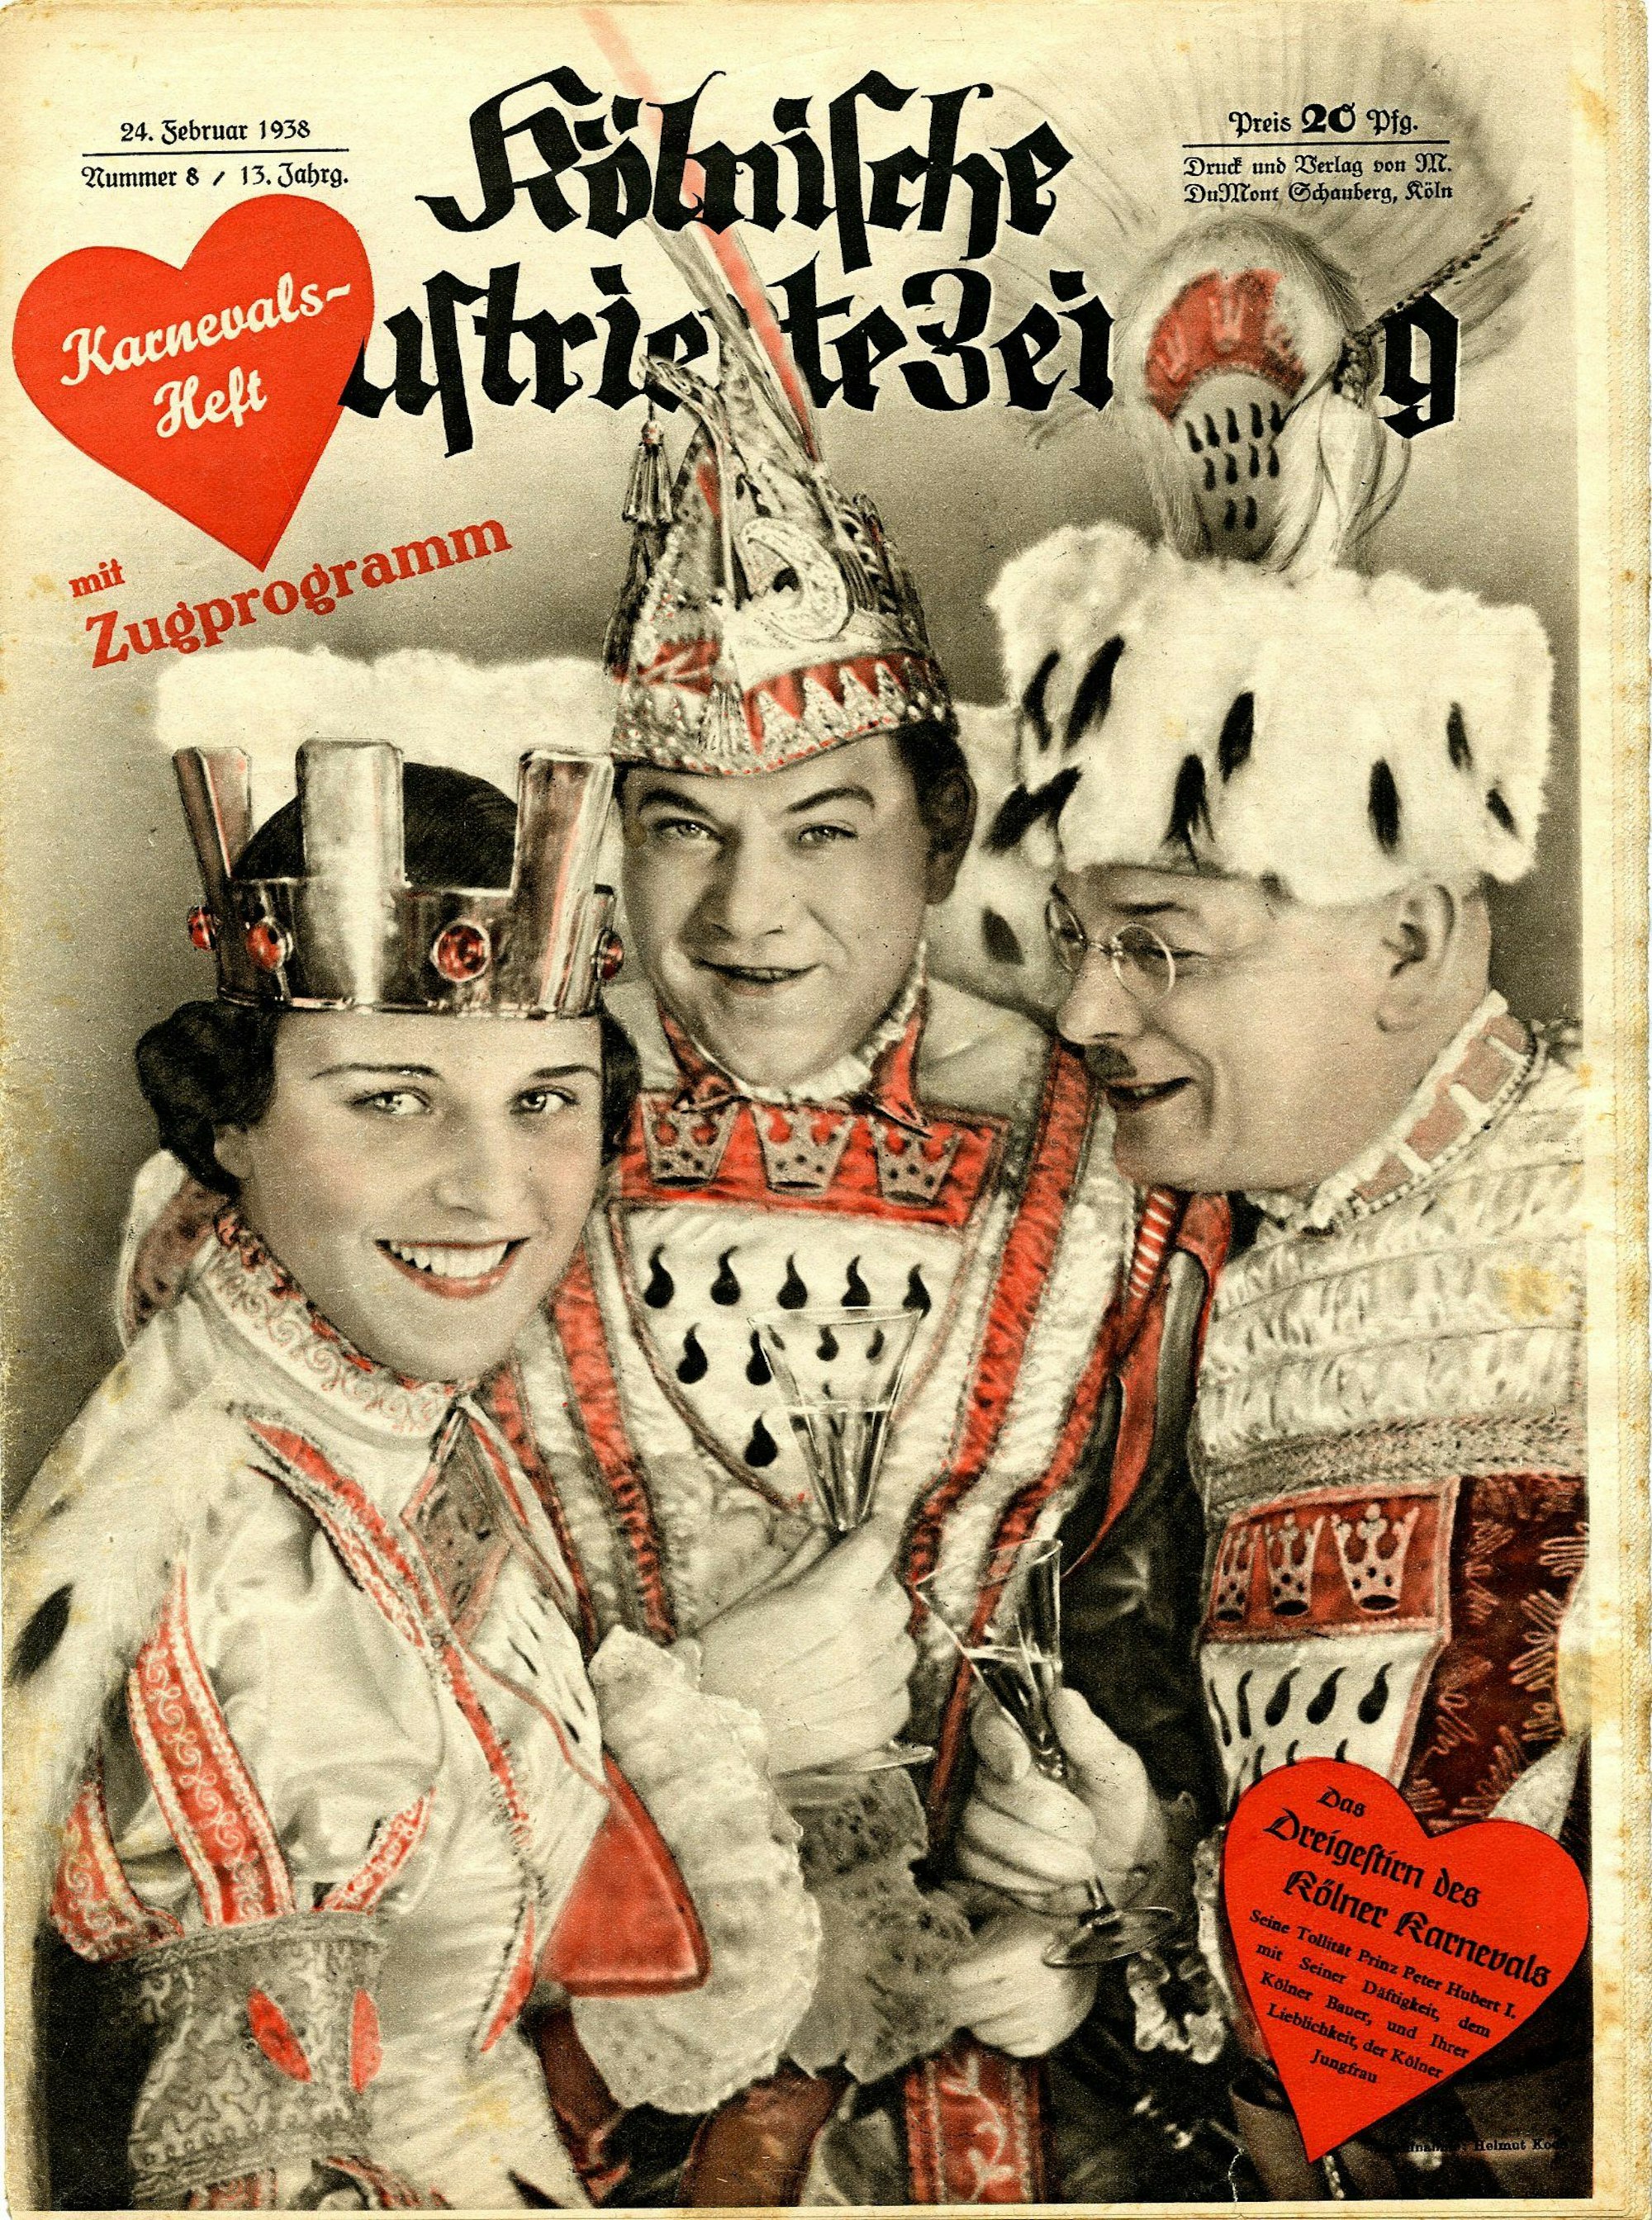 Kölnische Illustrierte Zeitung mit dem Dreigestirn von 1938